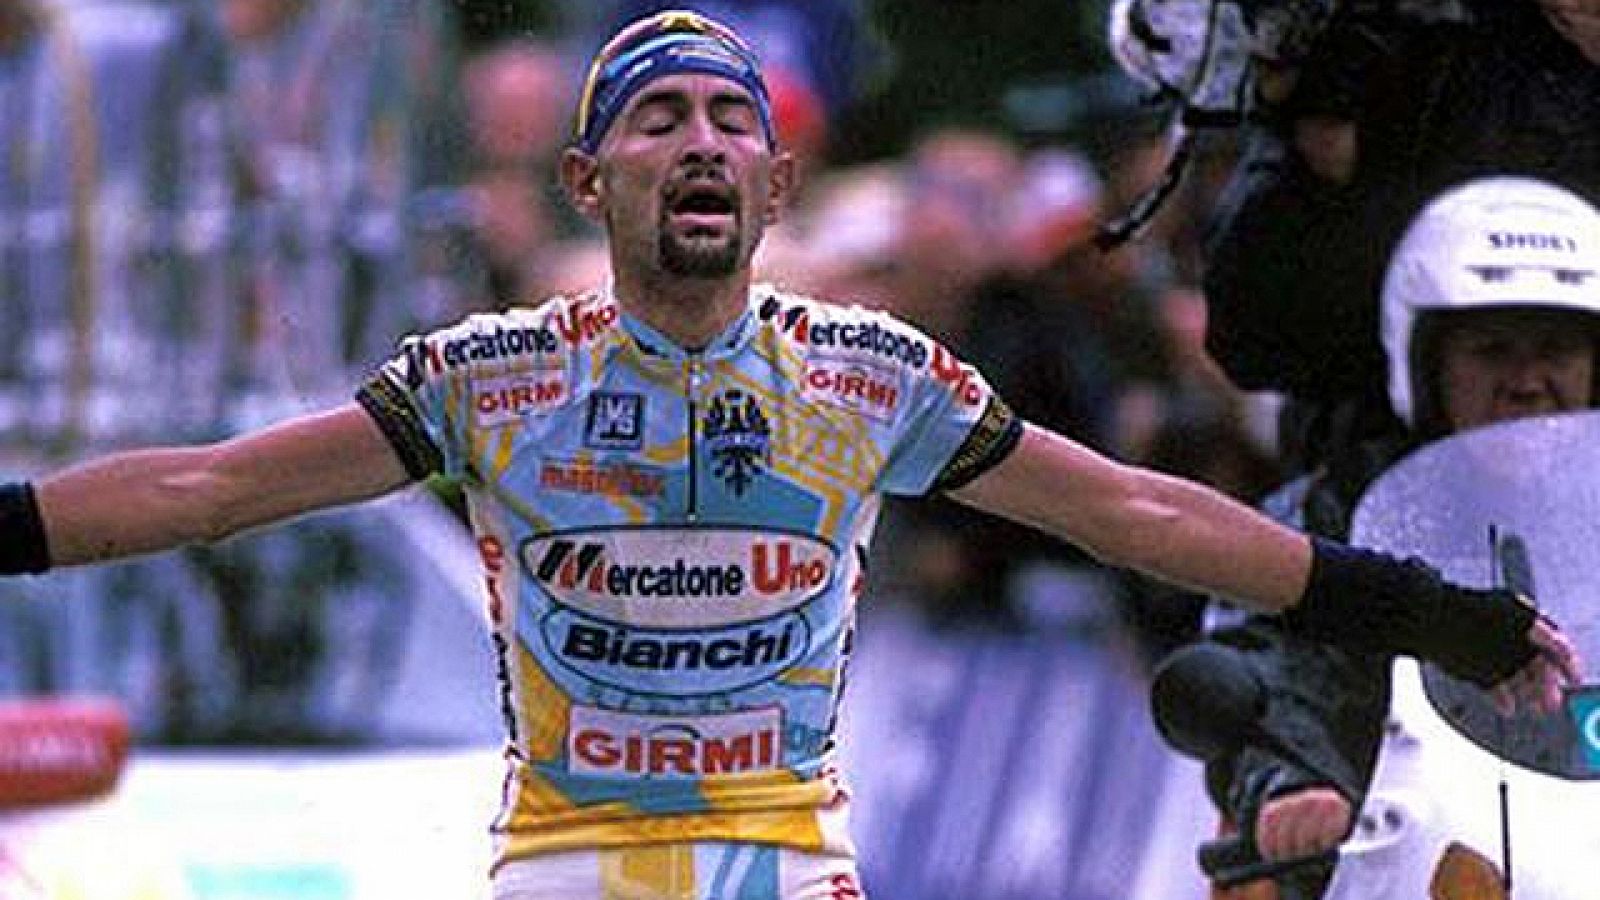 El Tour de Francia en 1998 se decantó a favor de Marco Pantani y en detrimento de Jan Ullrich en una etapa, la mítica etapa con final en Les Deux Alps en la que el corredor italiano ataco en una de las primeras ascensiones del día, la del temible Gal